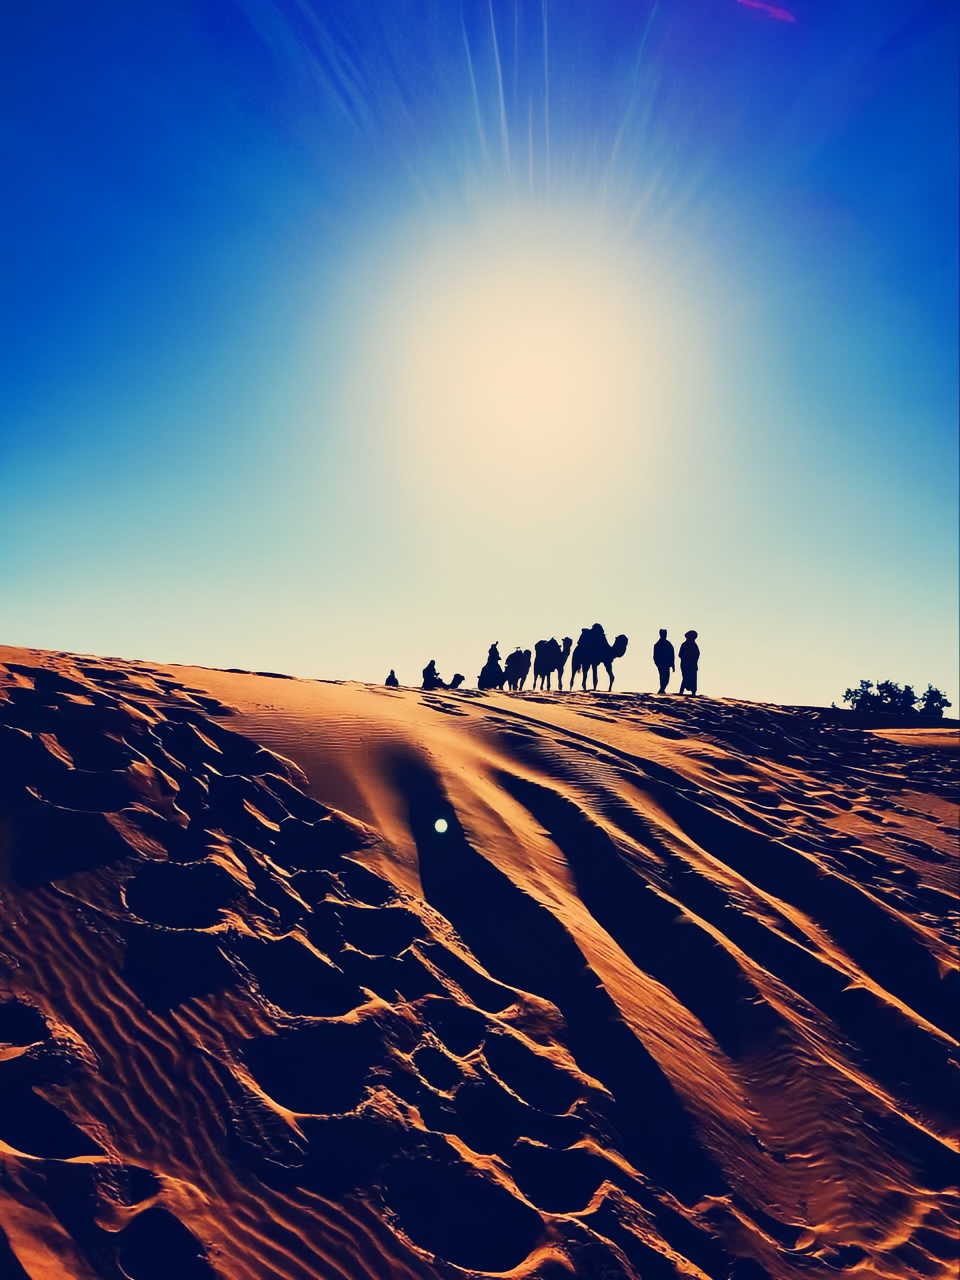 【摩洛哥·撒哈拉沙漠】大漠的日落依旧